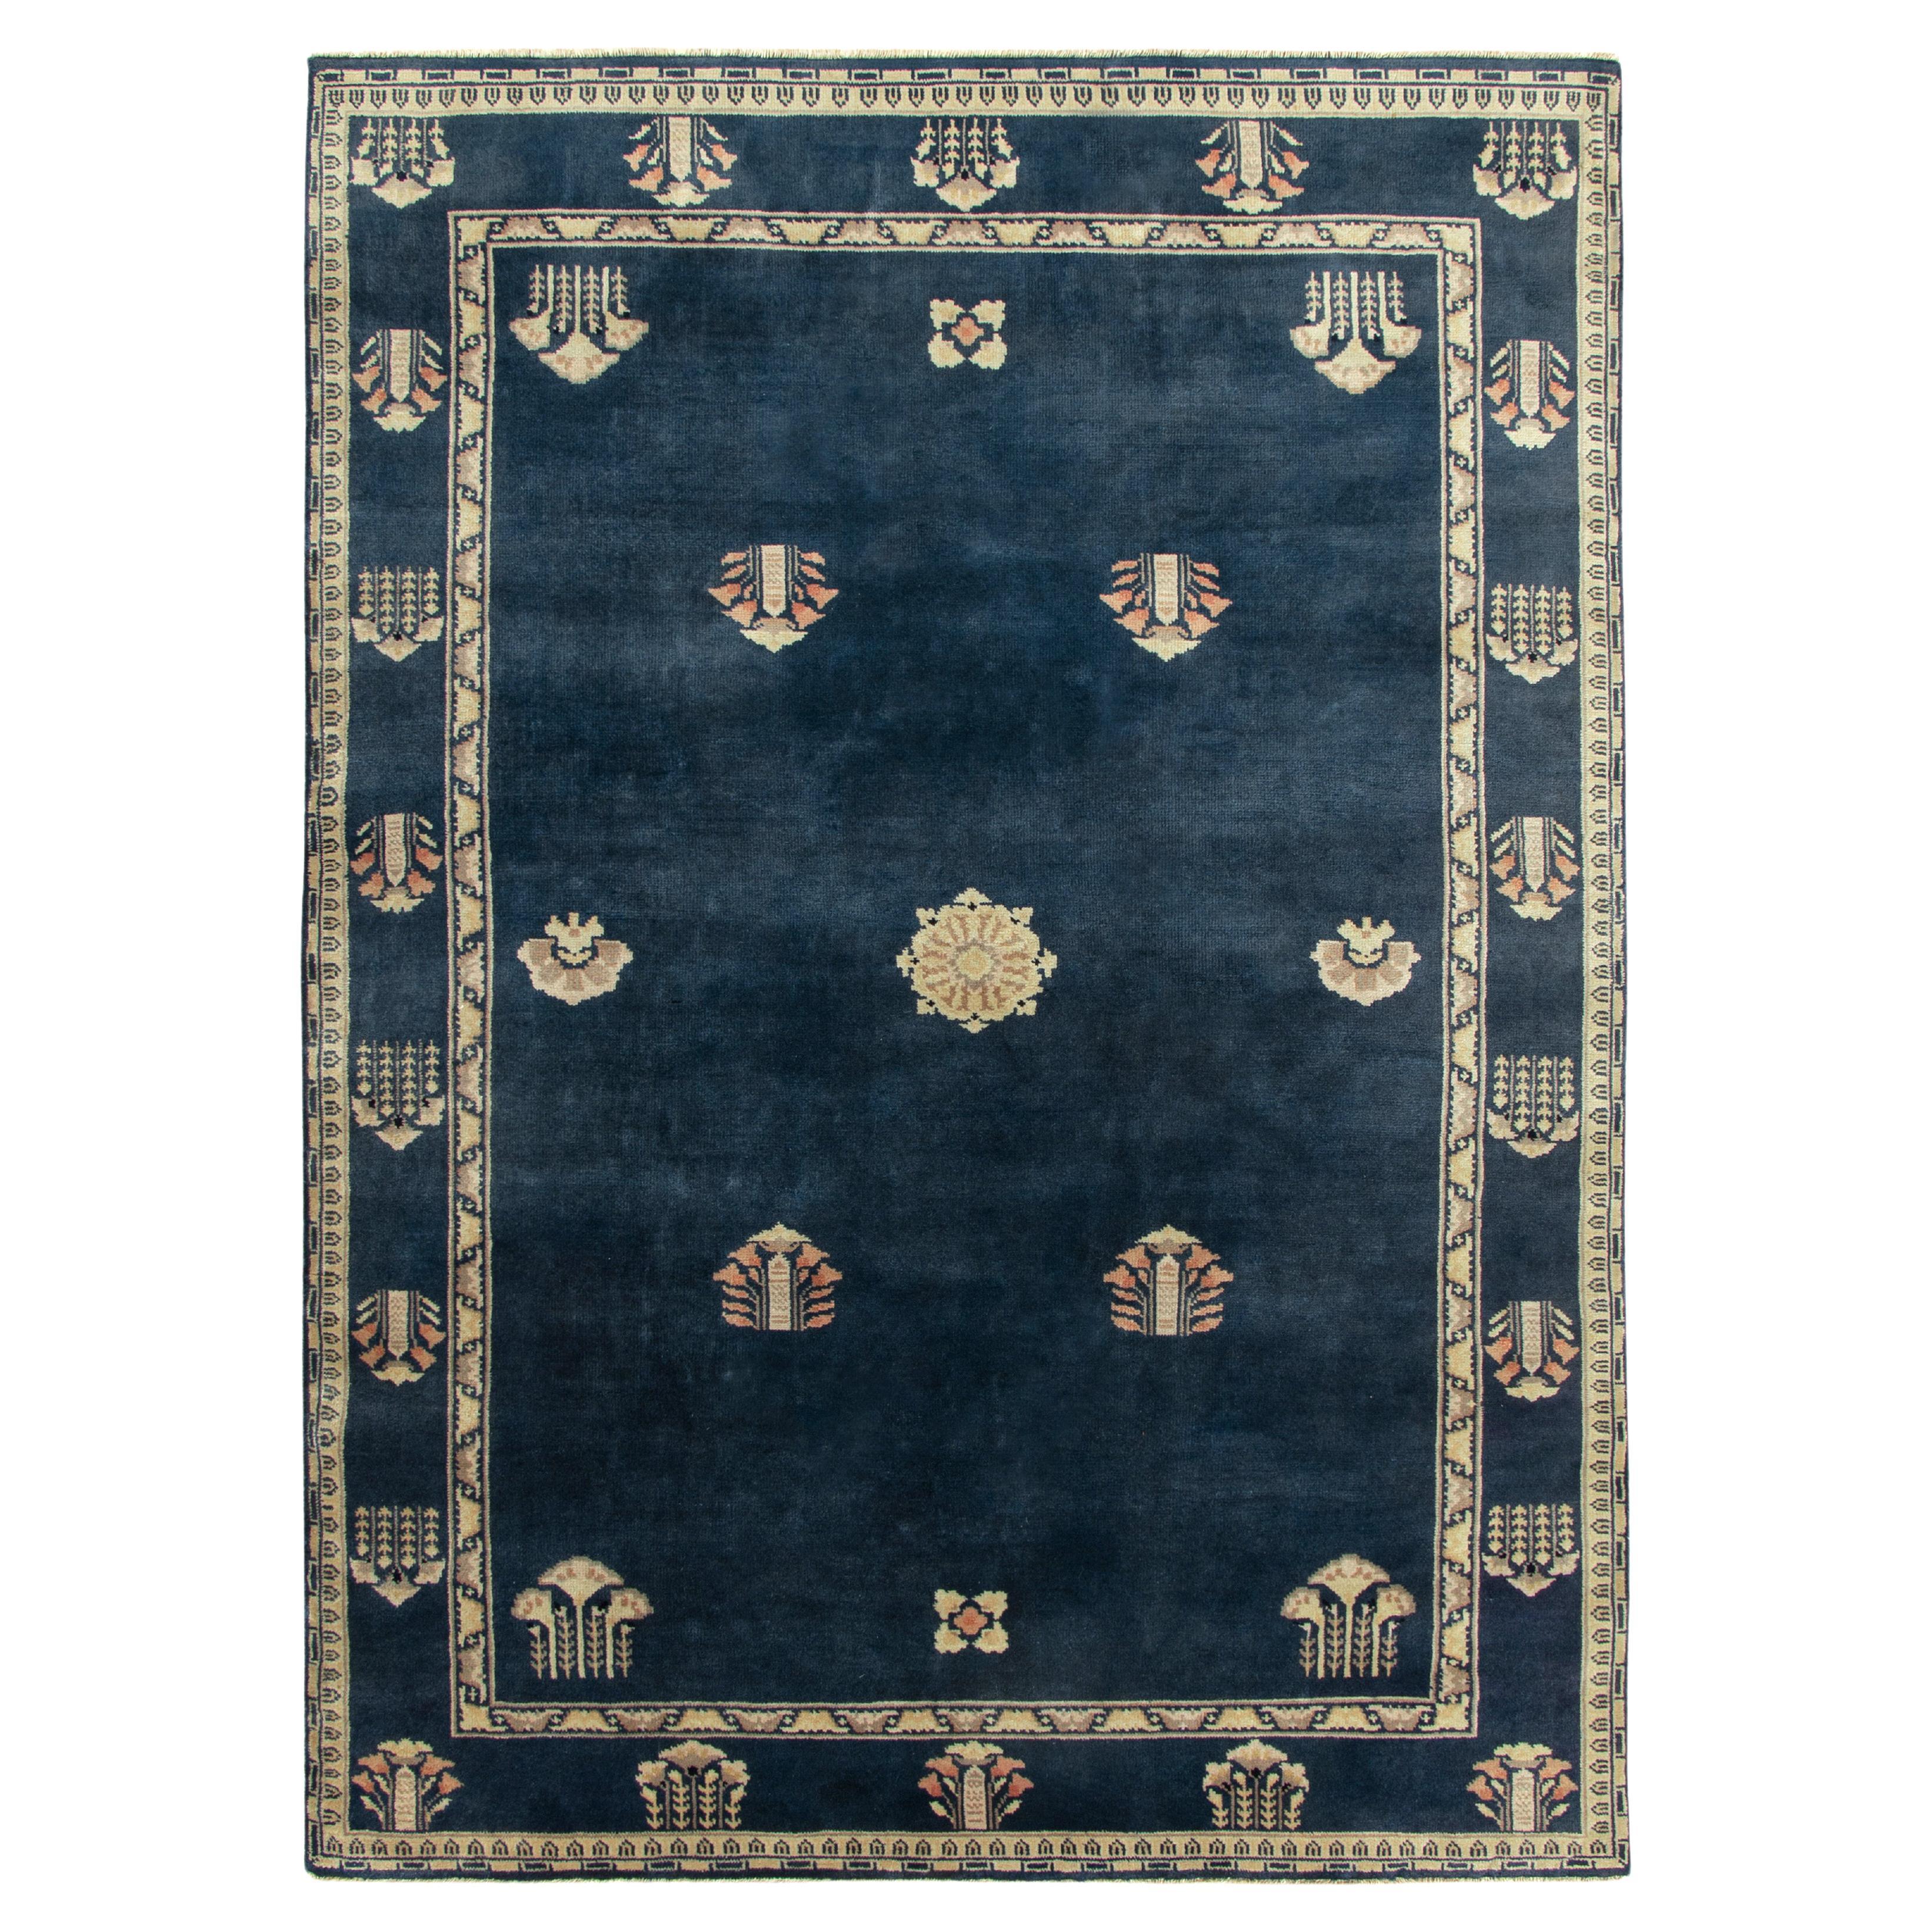 Chinesischer Deko-Teppich im Vintage-Stil in Blau & Grau mit Blumenmuster von Teppich & Kelim